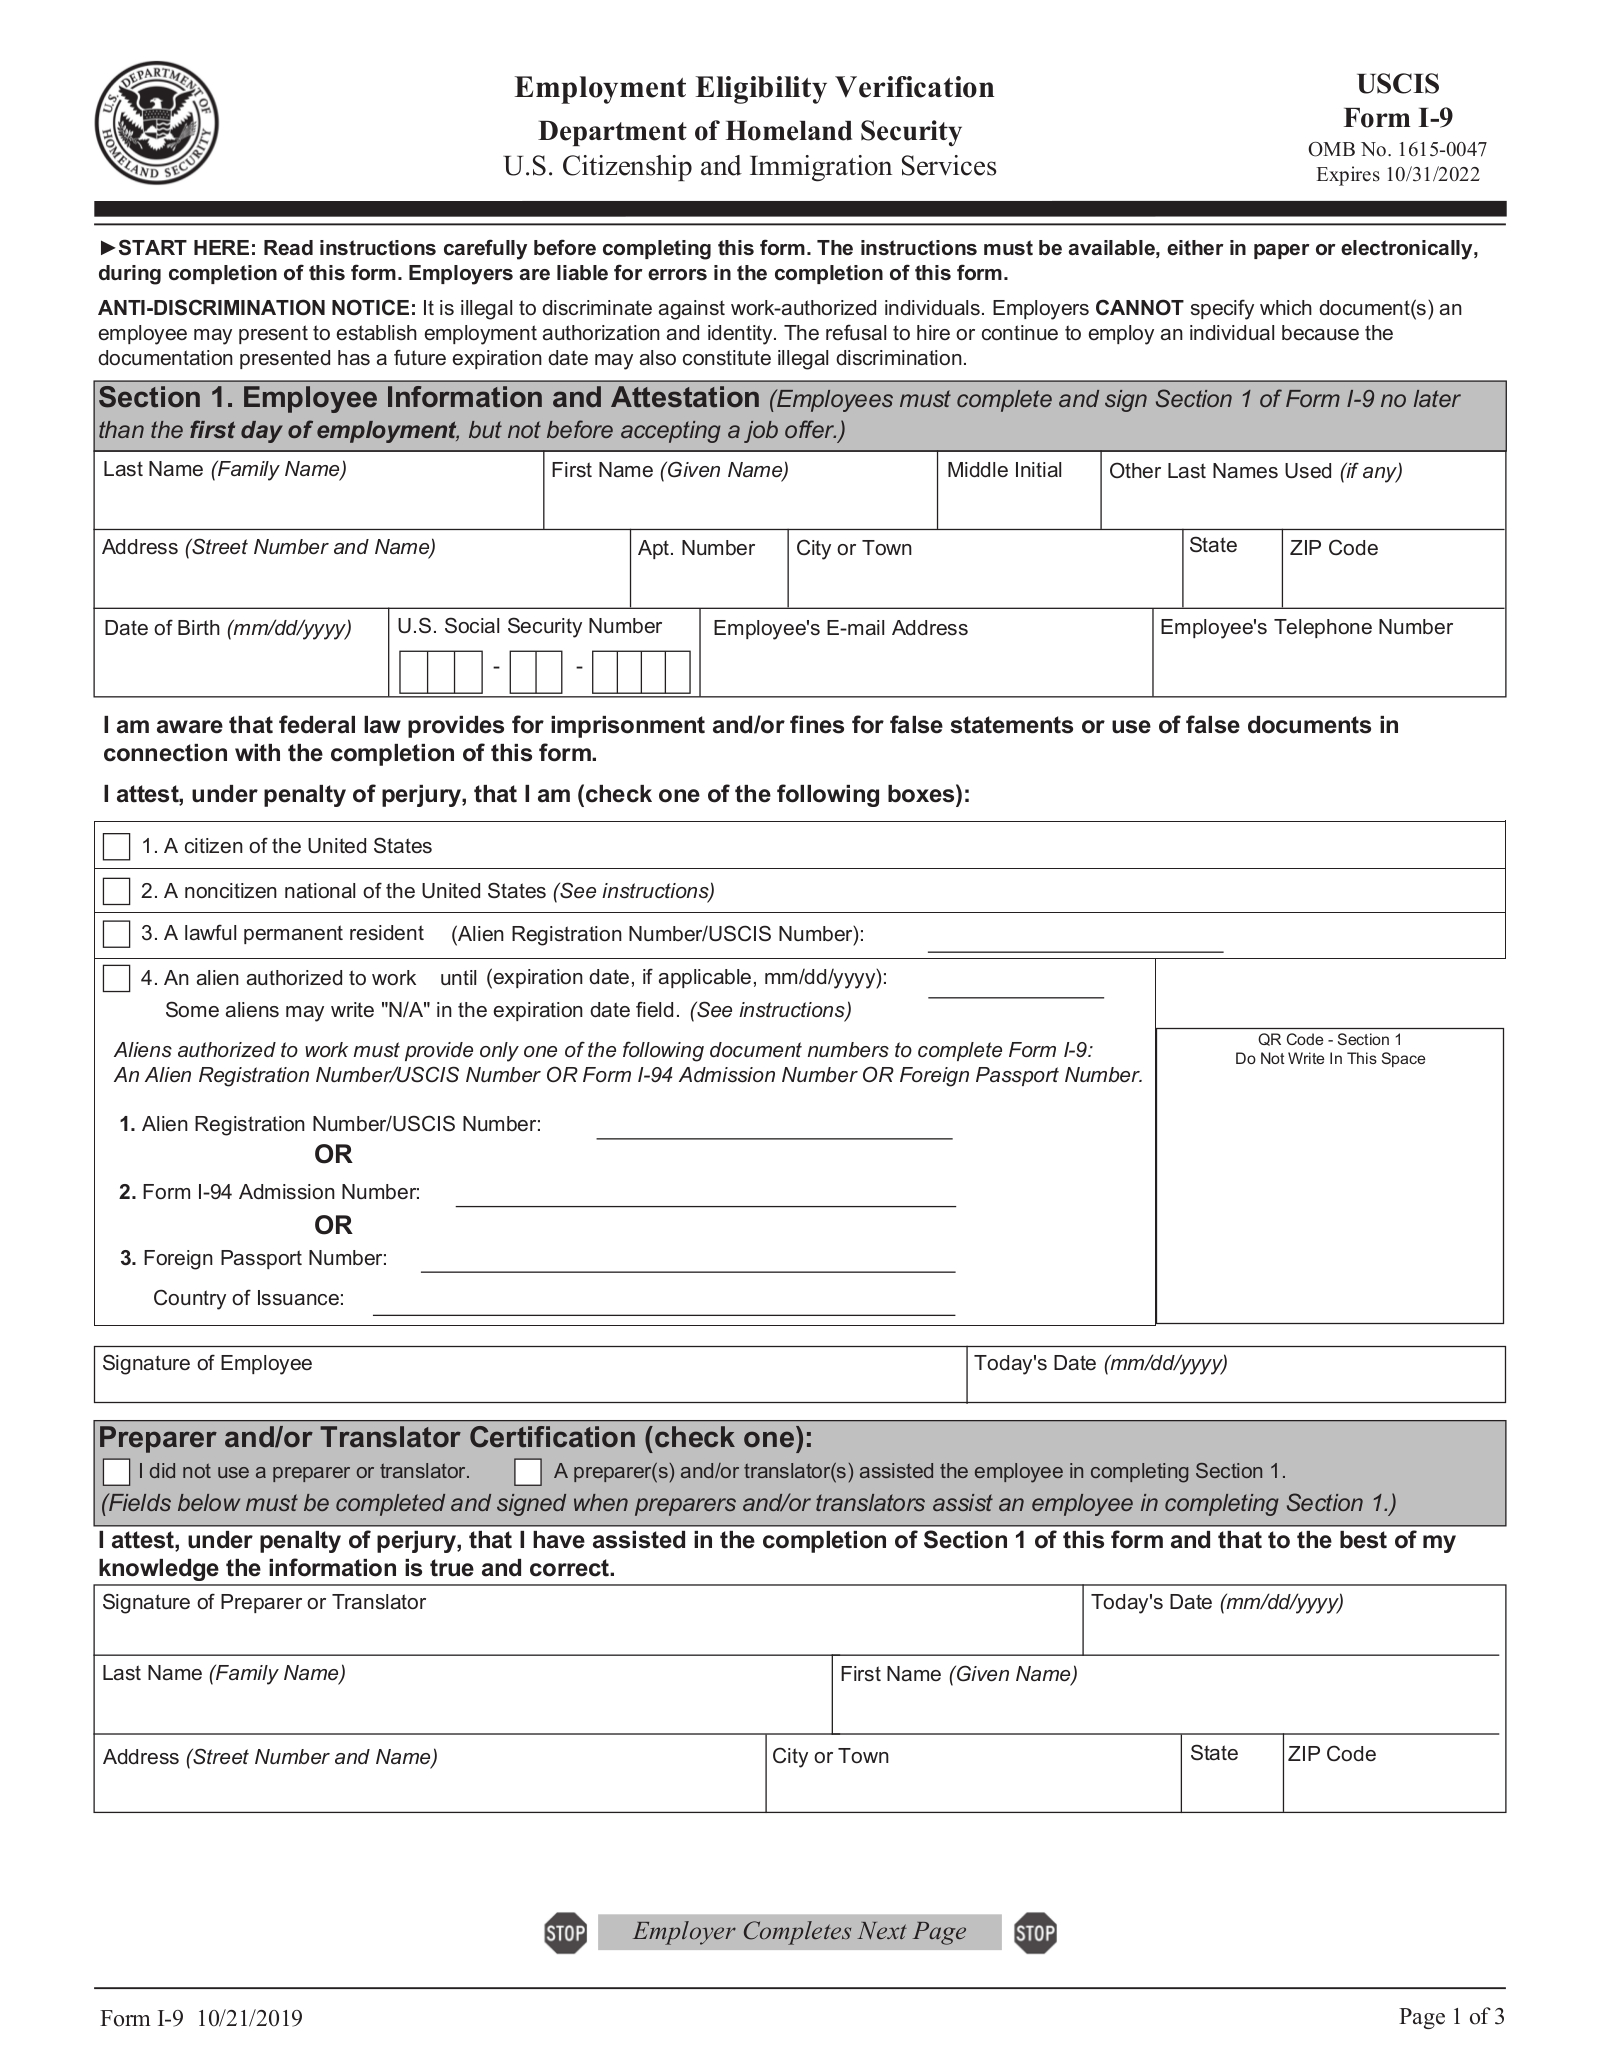 Uscis Form I-9 – Employment Eligibility Verification | Eforms